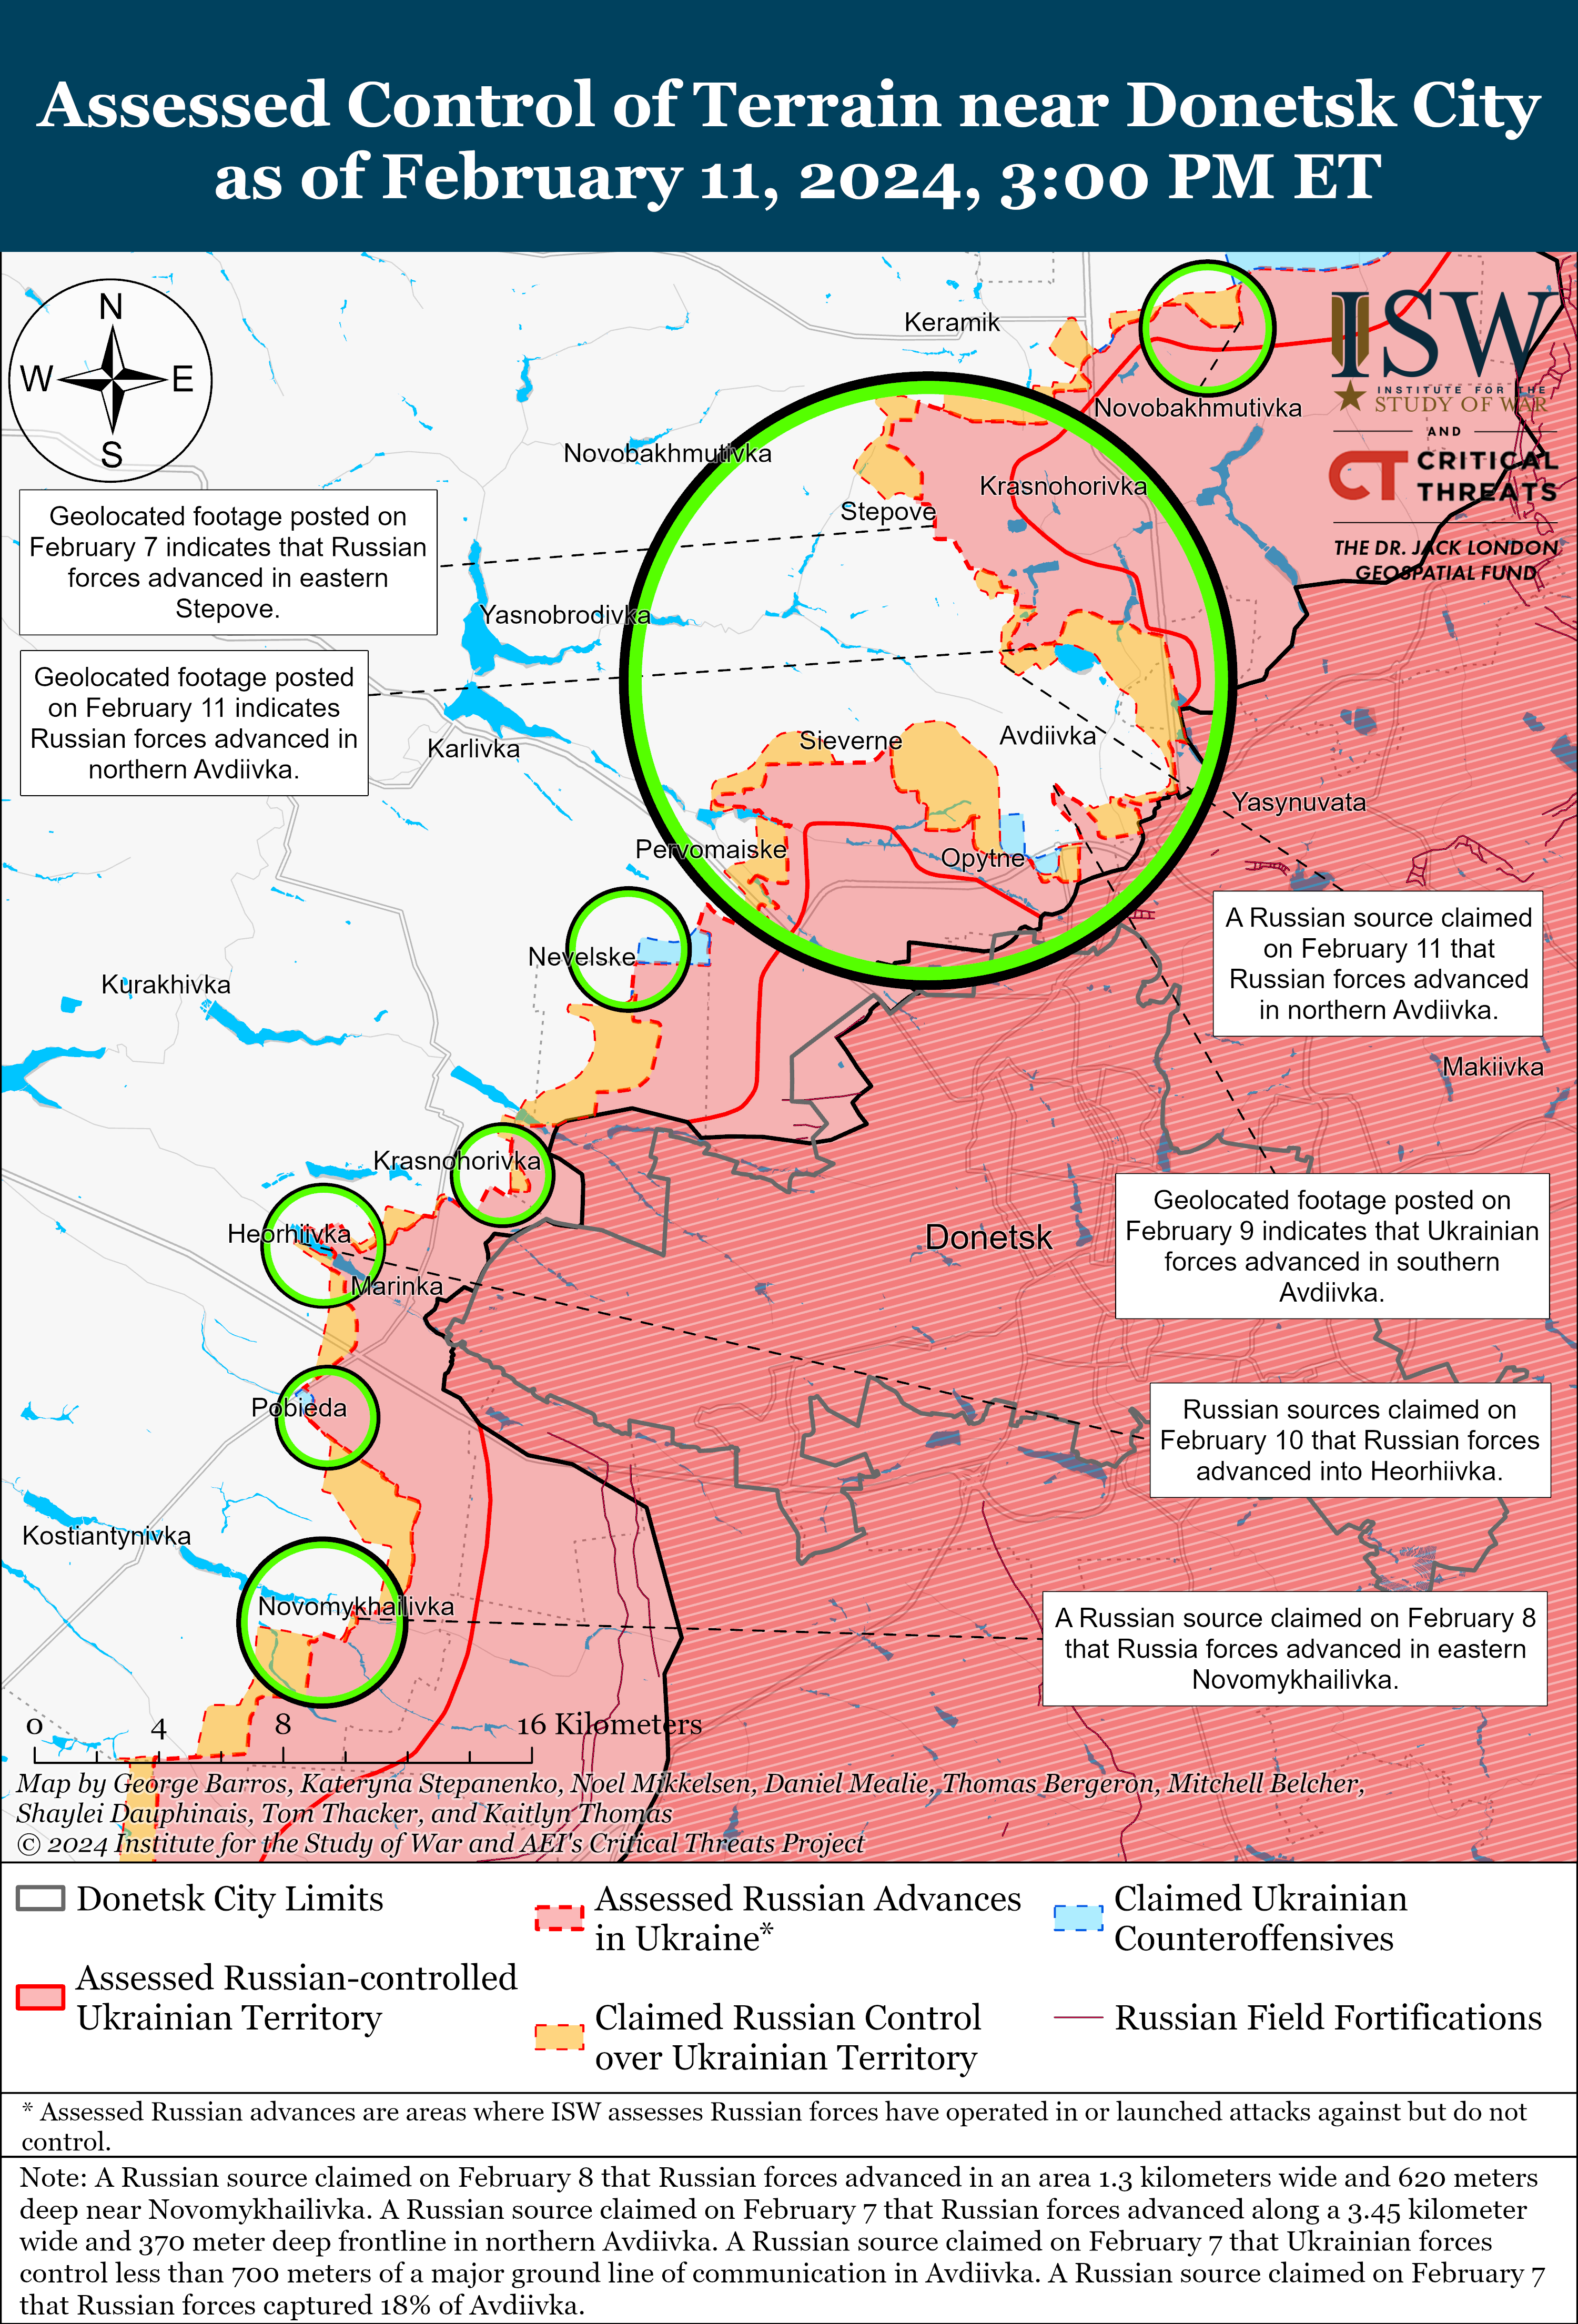 Rascunho do mapa de batalha da cidade de Avdiivka e Donetsk, 11 de fevereiro de 2024.png (2,11 MB)